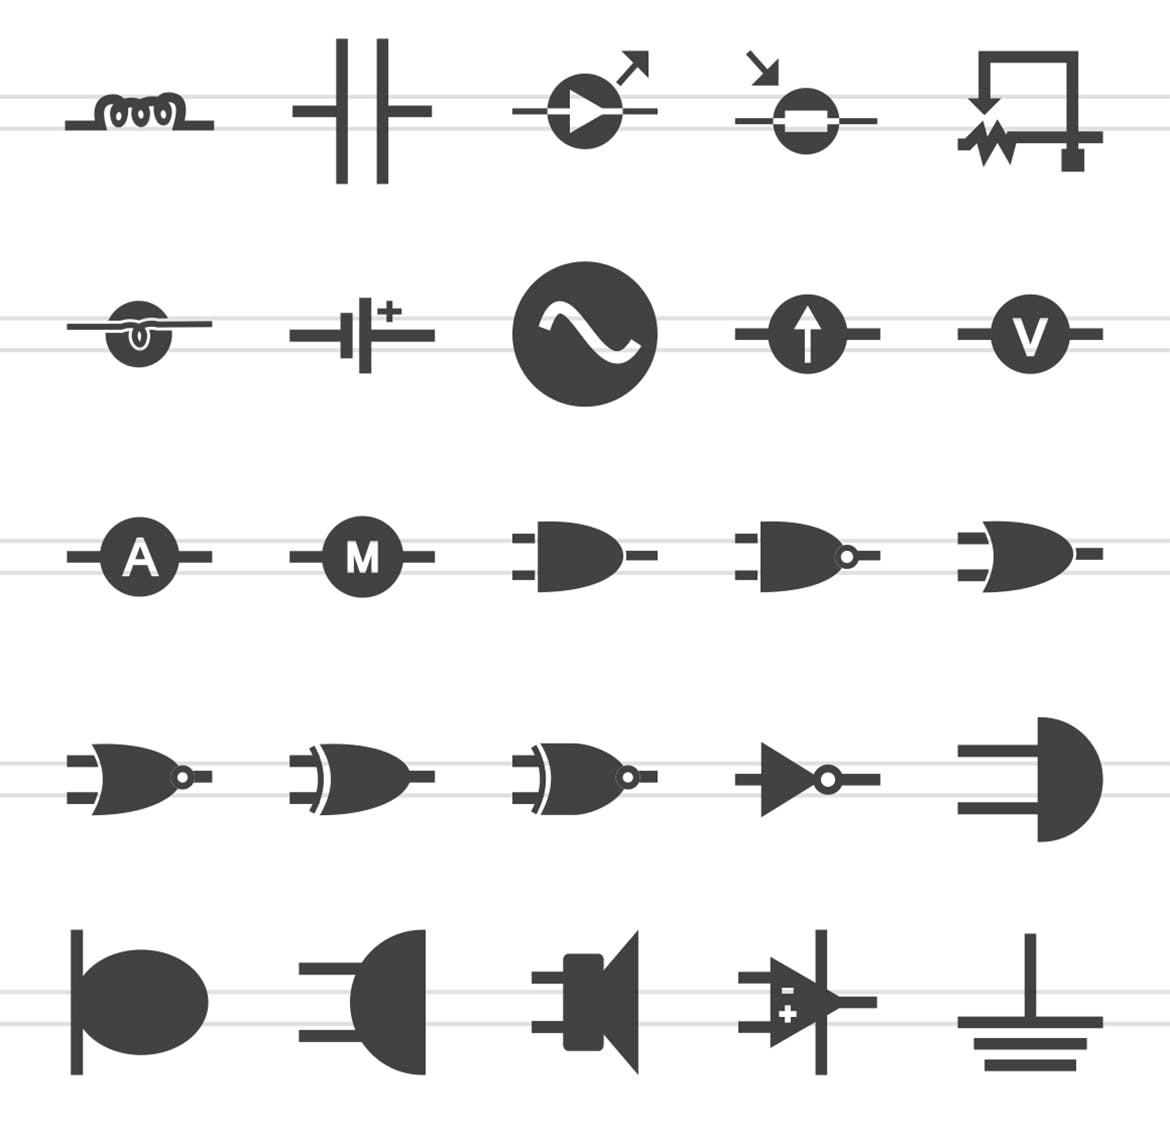 50枚电路线路板主题黑色字体蚂蚁素材精选图标 50 Electric Circuits Glyph Icons插图(2)